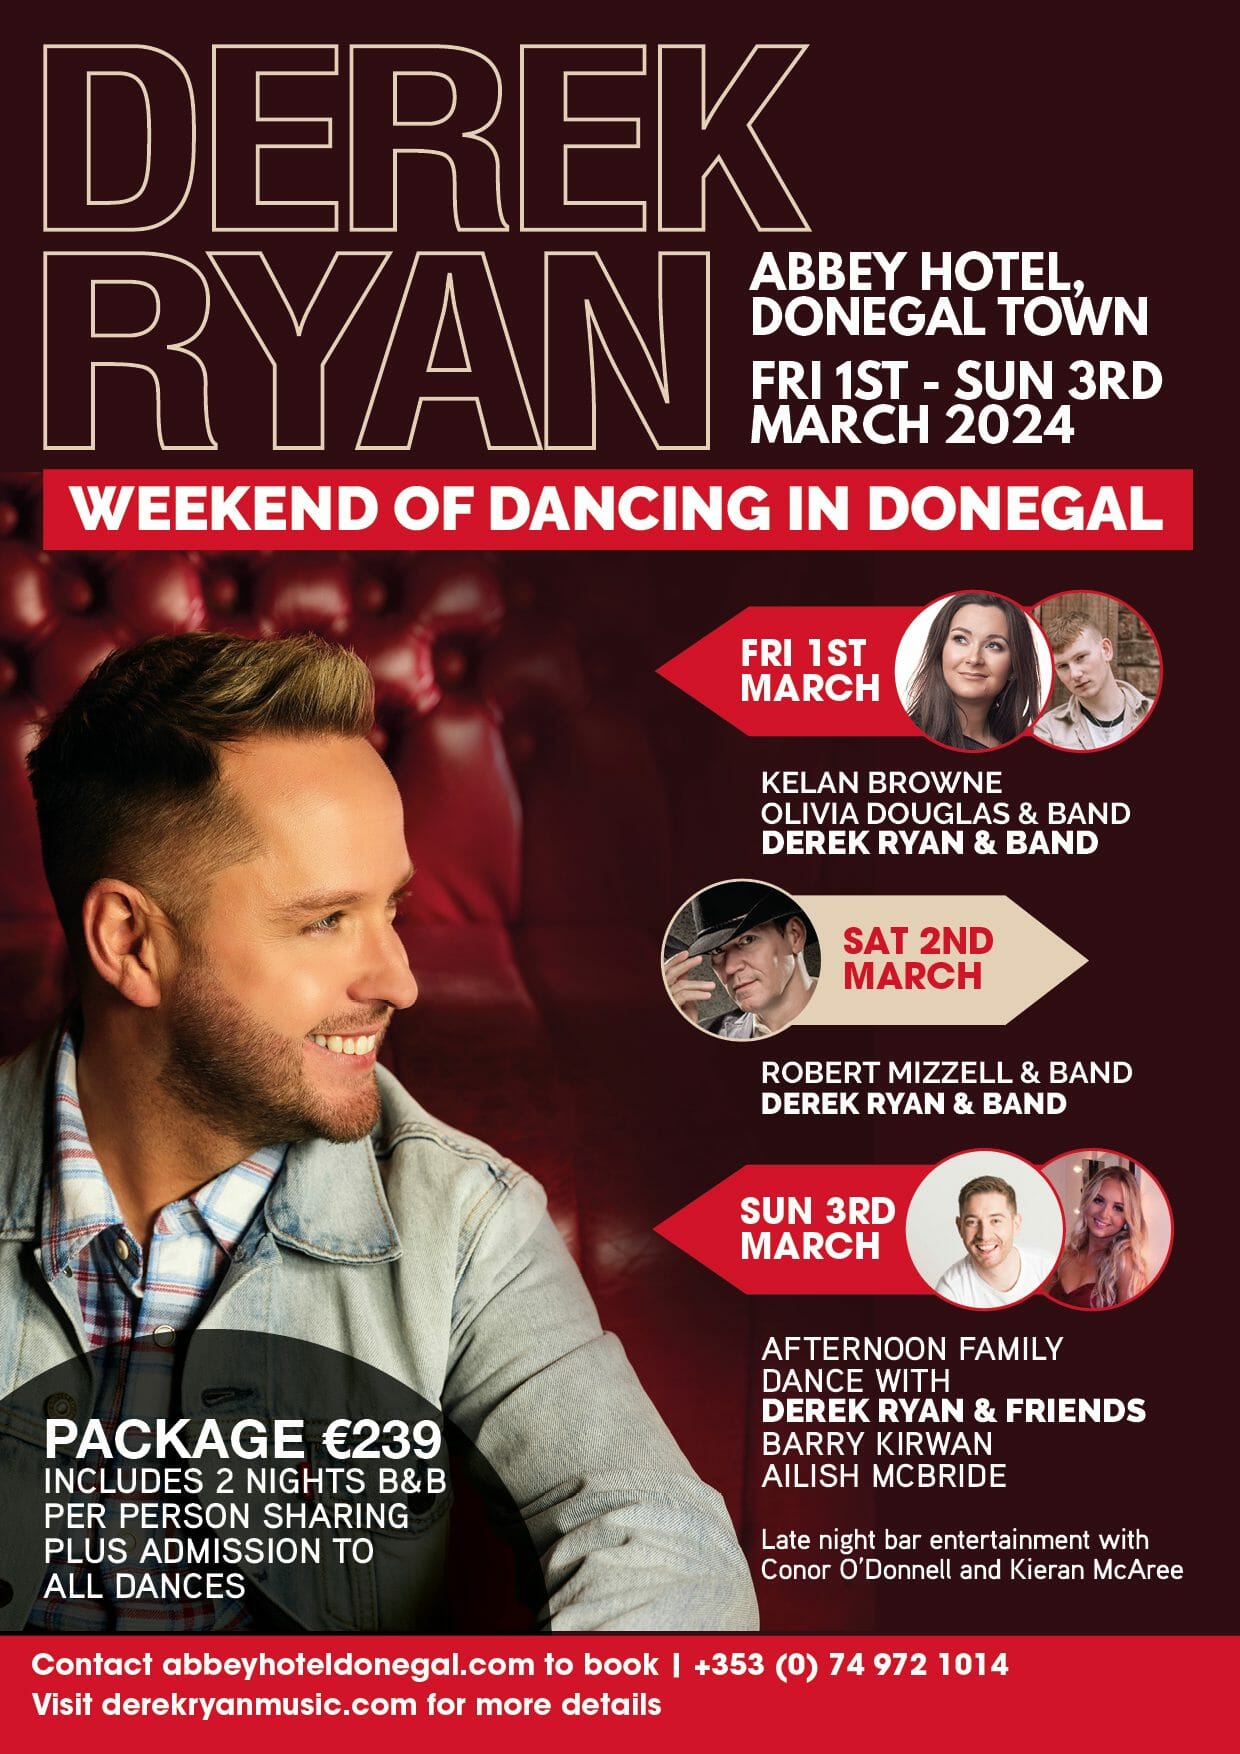 Derek Ryan Biography. Irish Country Music Super Star.